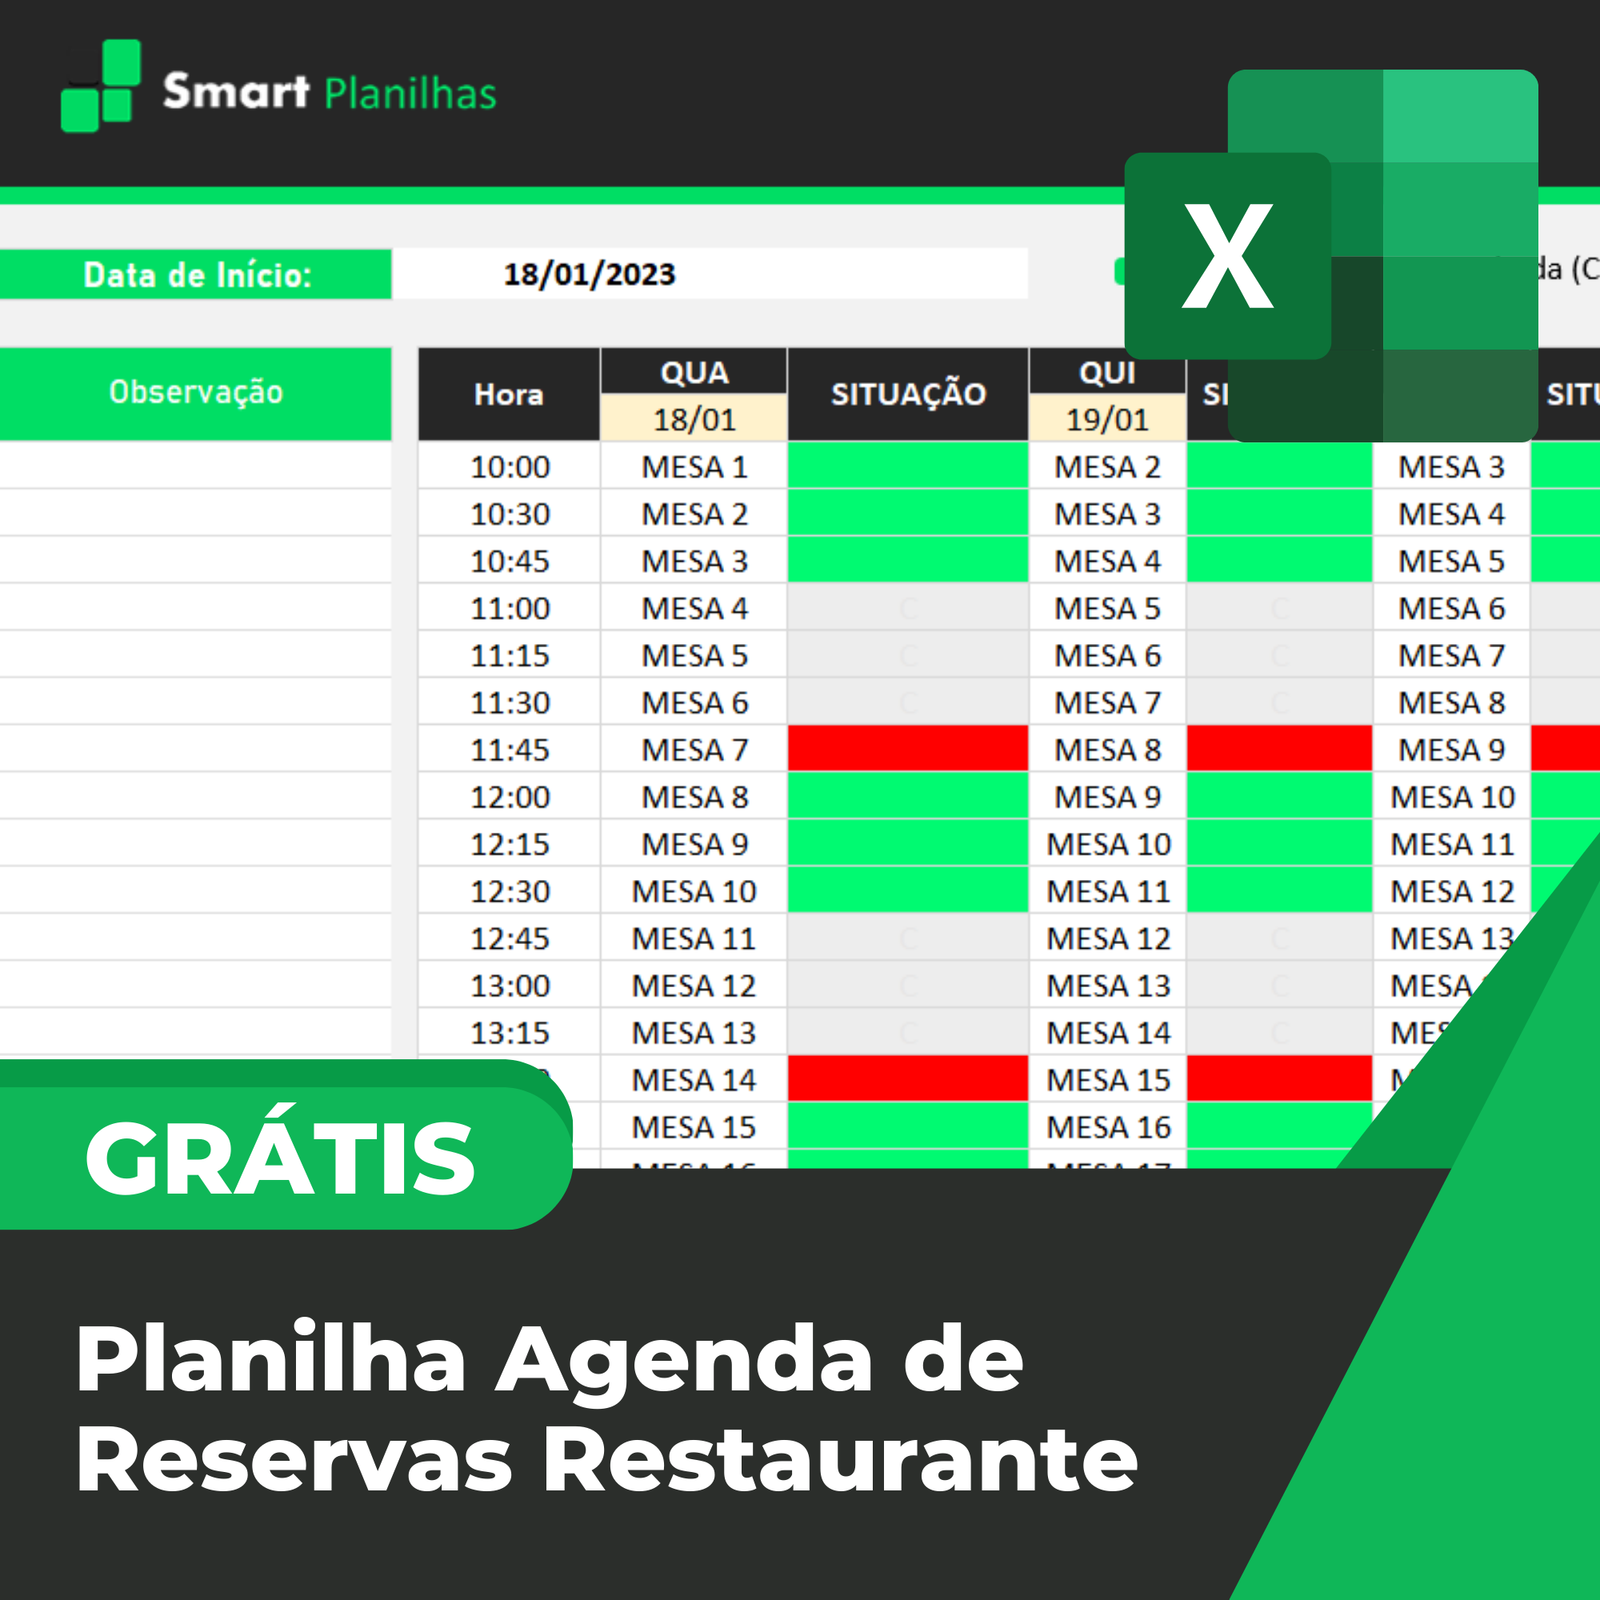 Planilha Agenda De Reservas Restaurante Smart Planilhas 8346